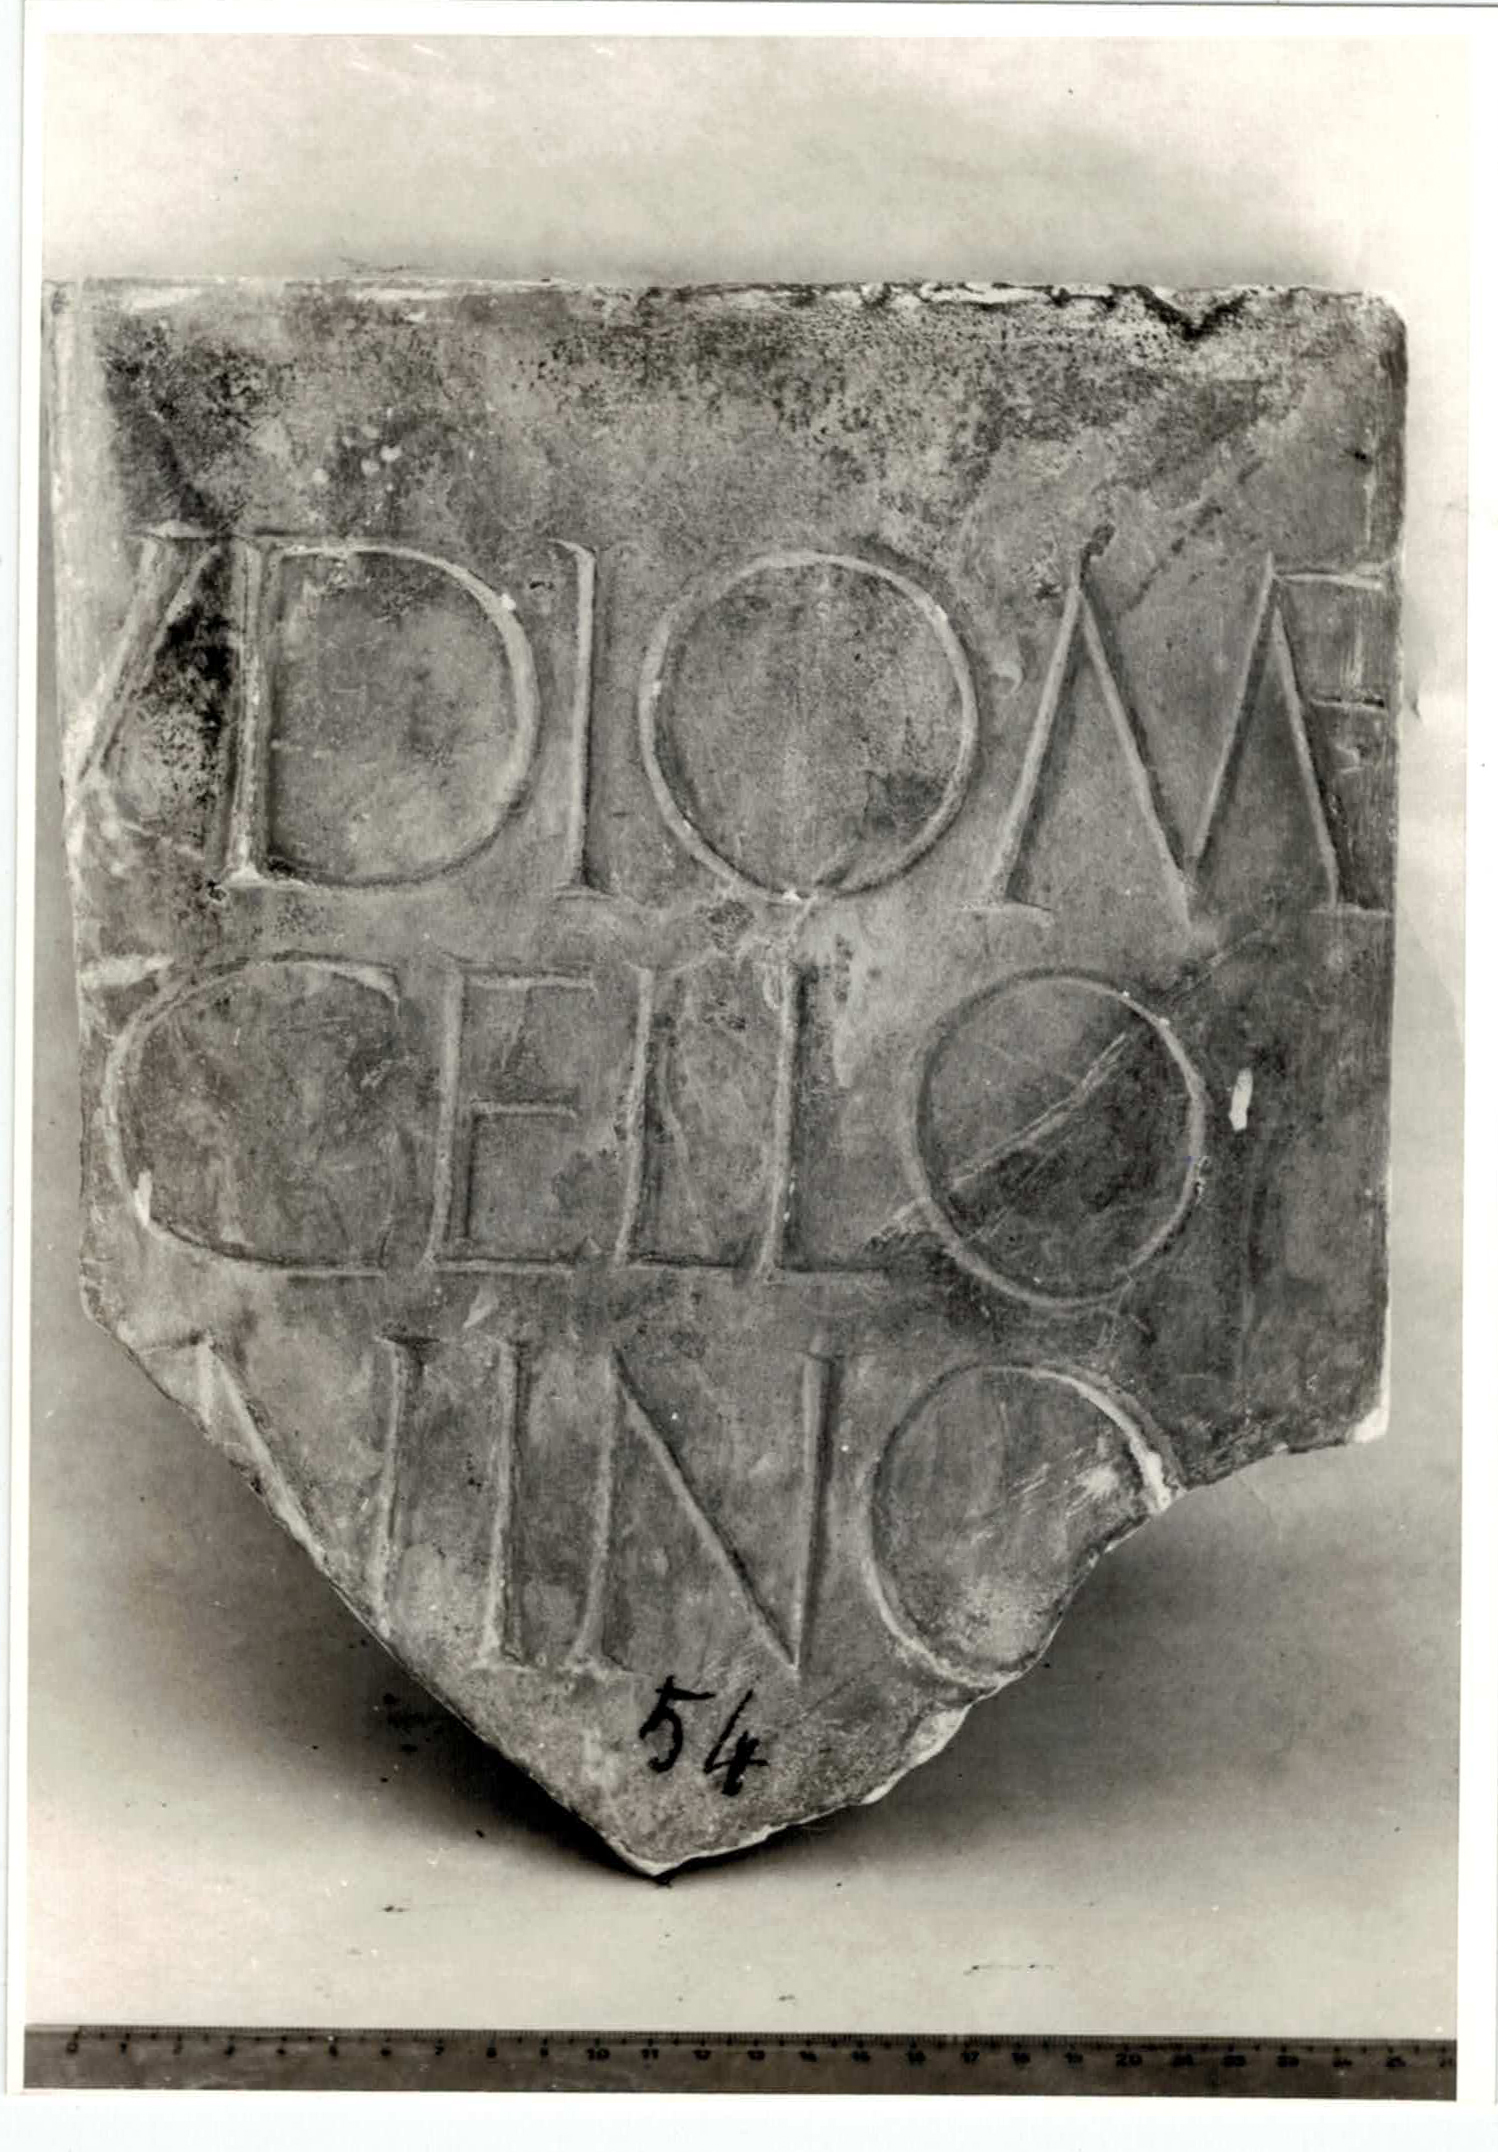 iscrizione, onoraria - età romana imperiale (prima metà I d.C)